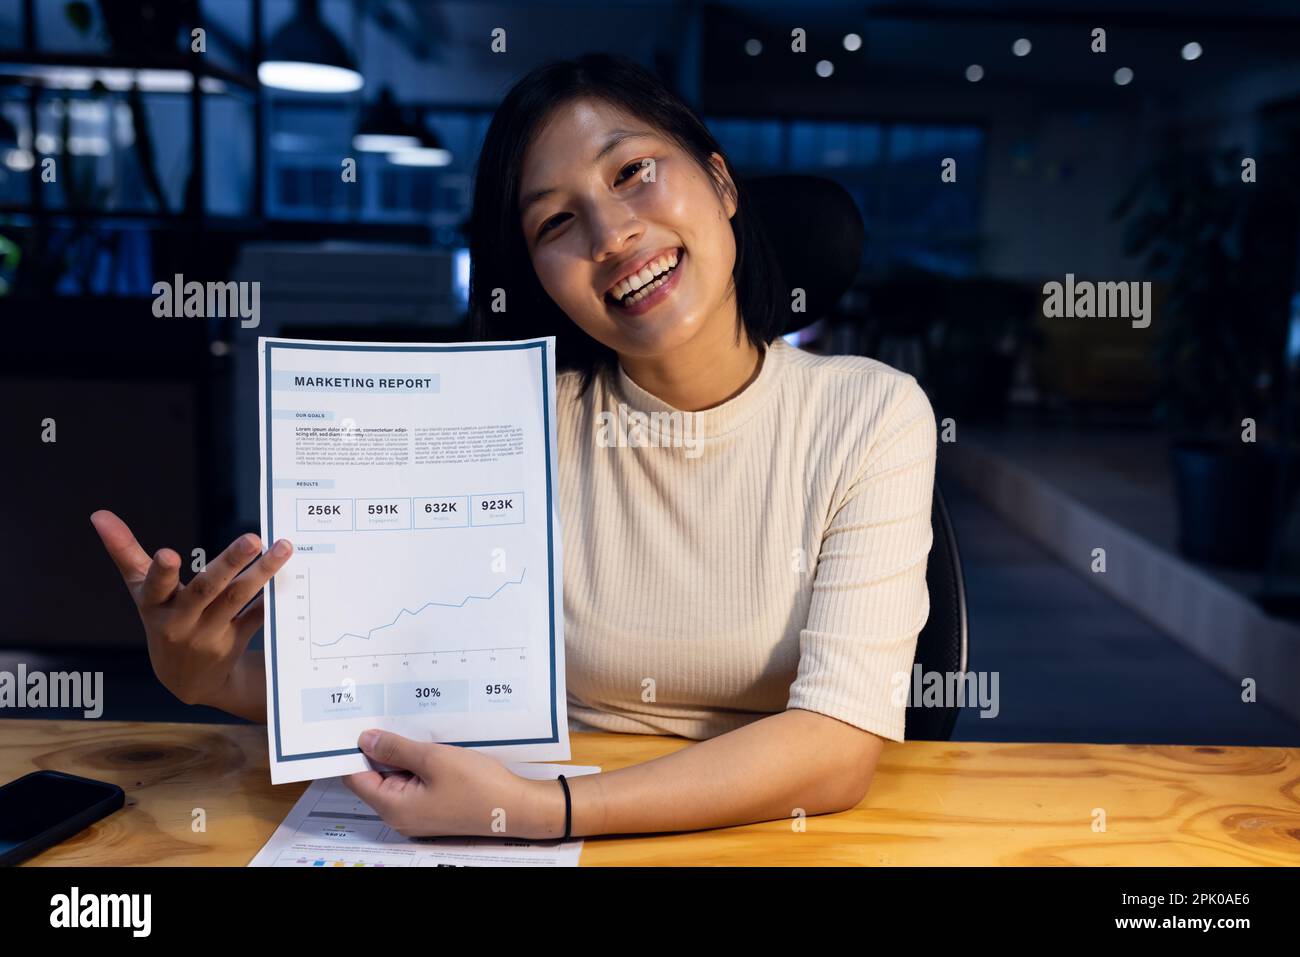 Bonne femme d'affaires asiatique tenant des documents en passant un appel vidéo, travaillant tard au bureau Banque D'Images